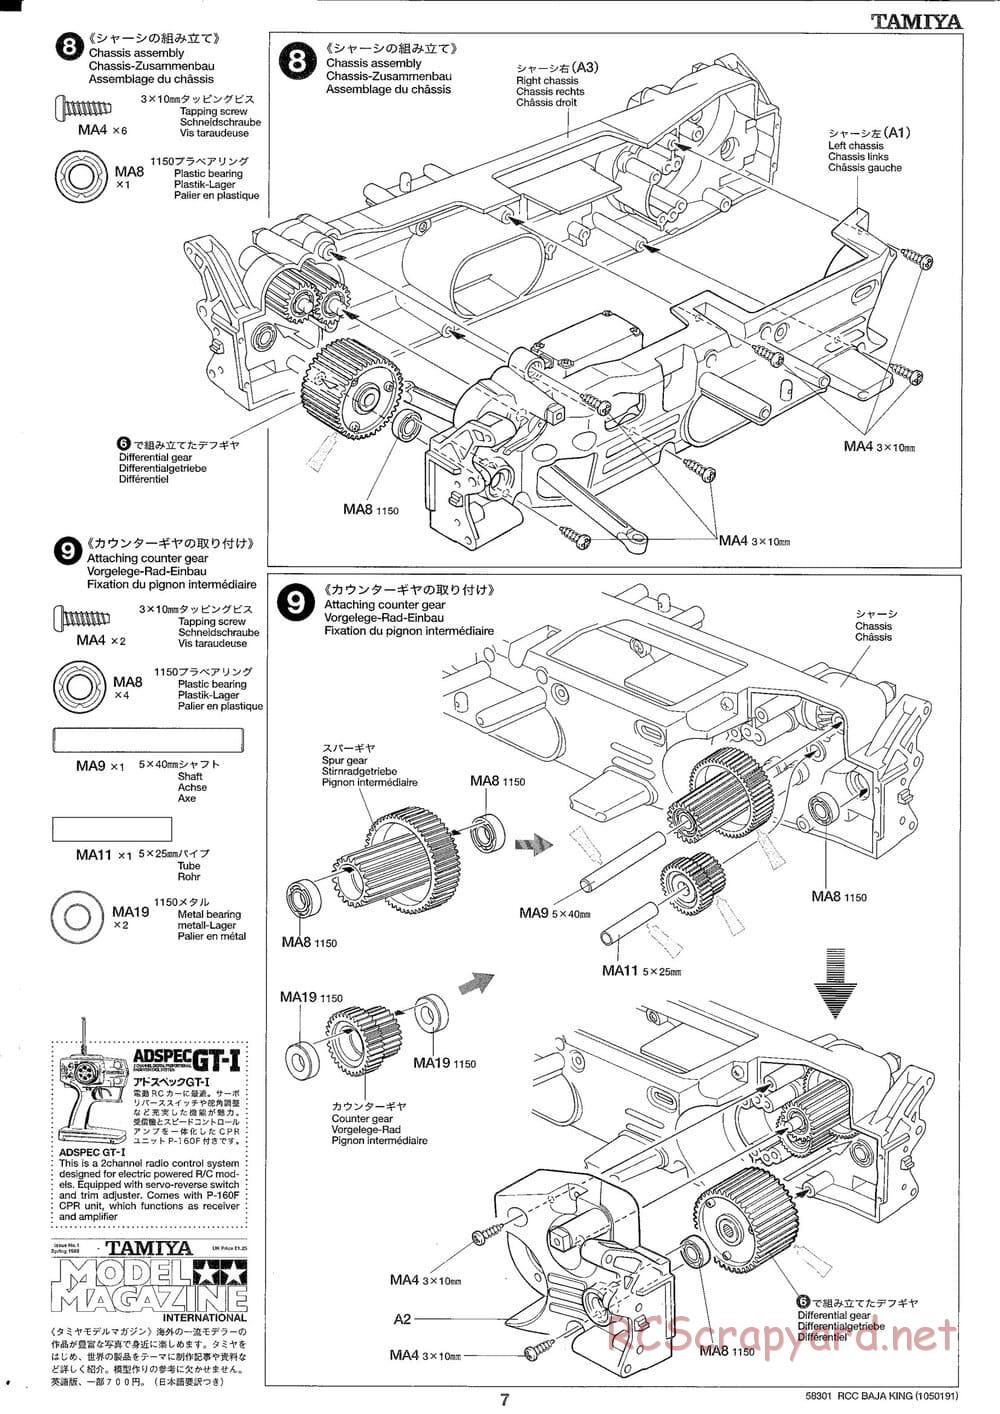 Tamiya - Baja King - TL-01B Chassis - Manual - Page 7